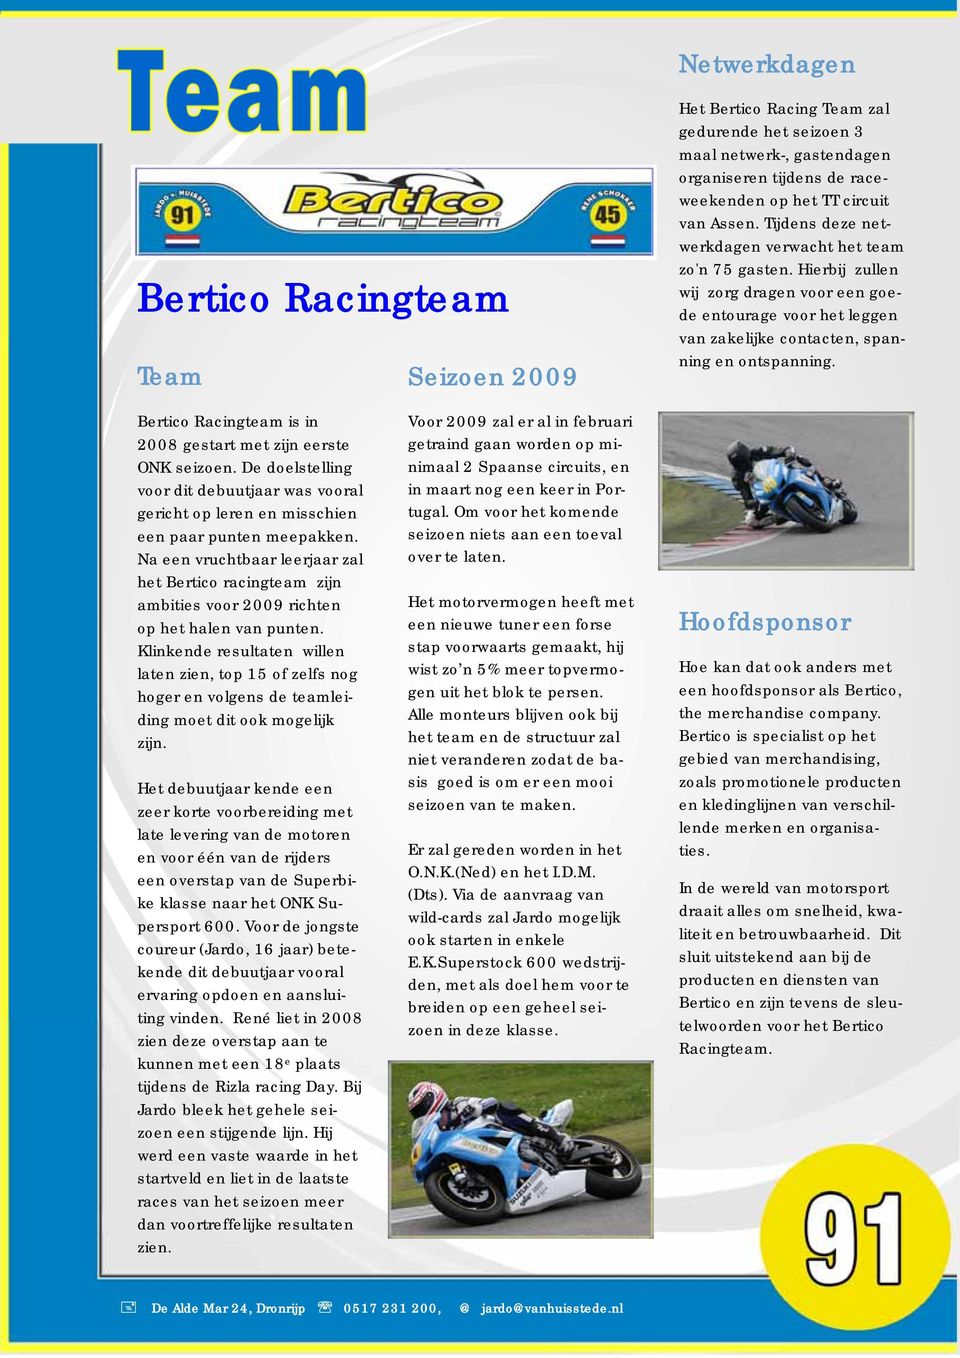 Bertico Racingteam is in 2008 gestart met zijn eerste ONK seizoen. De doelstelling voor dit debuutjaar was vooral gericht op leren en misschien een paar punten meepakken.